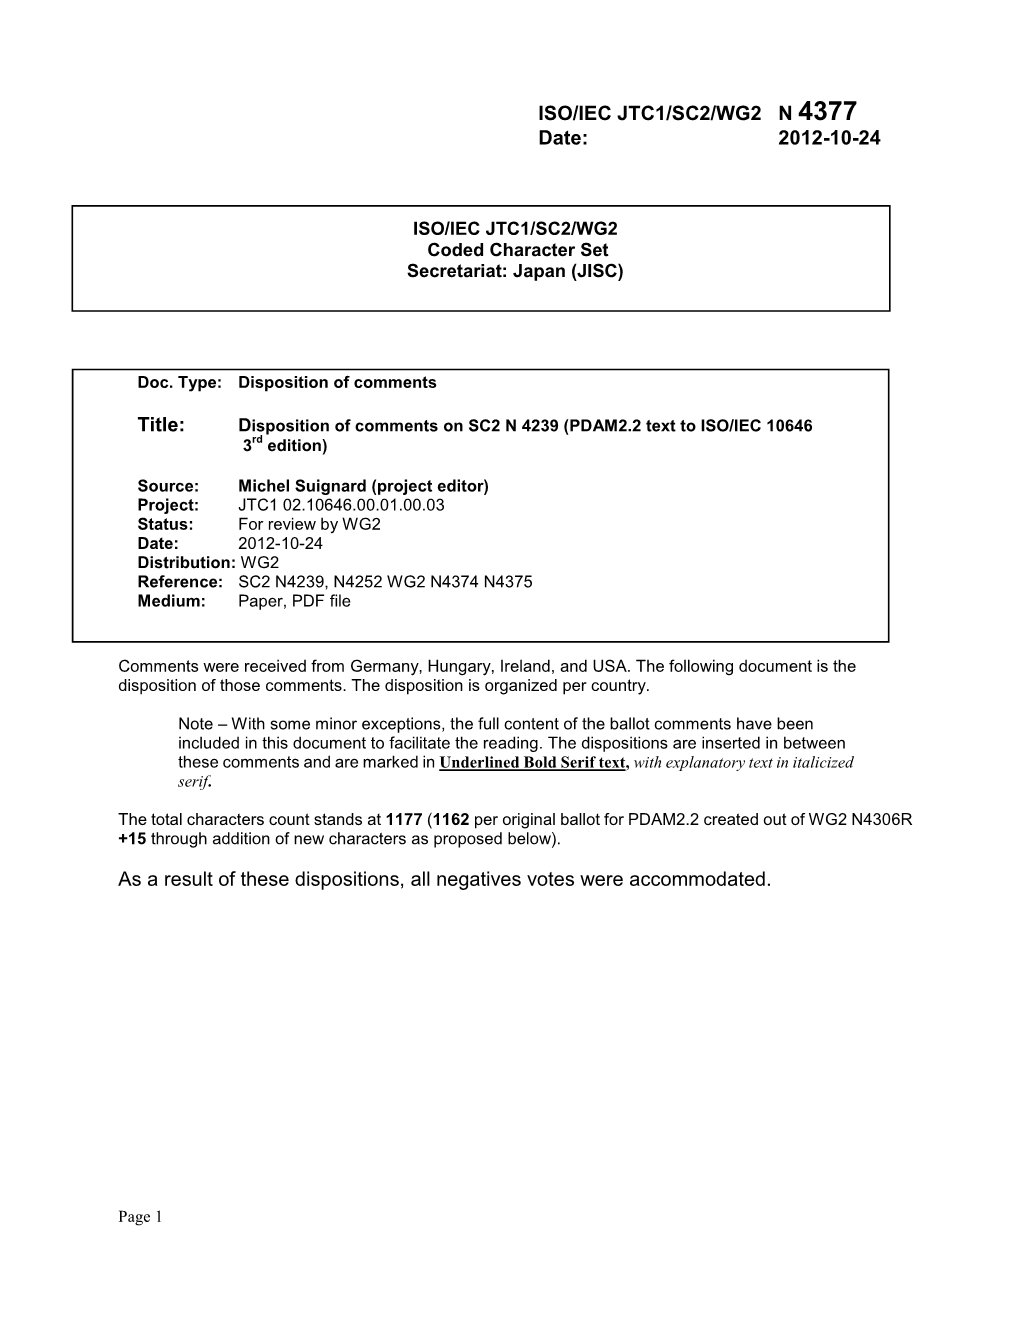 ISO/IEC JTC1/SC2/WG2 N 4377 Date: 2012-10-24